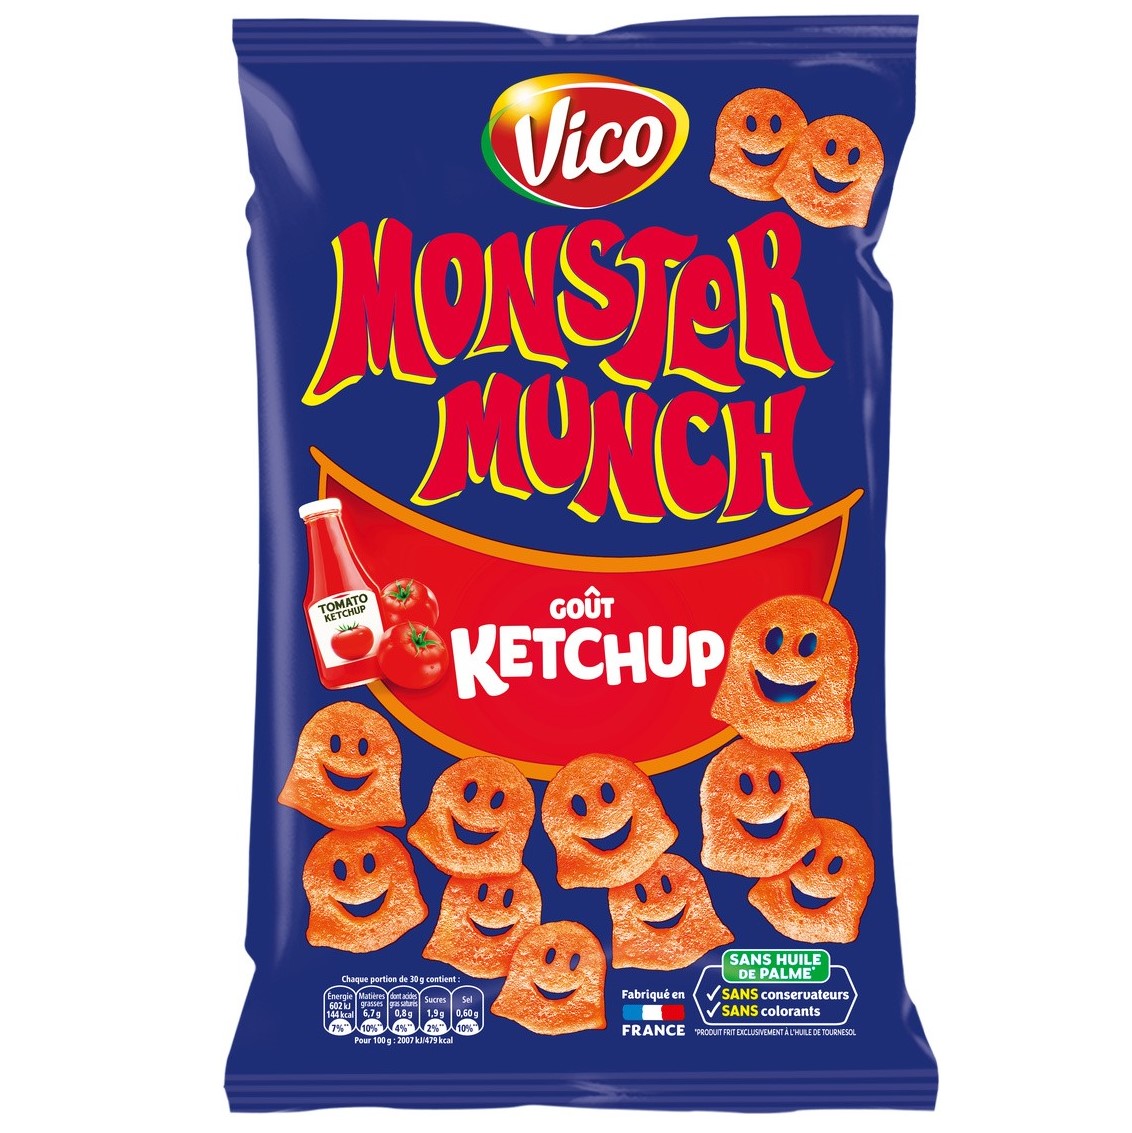 Monster Munch ketchup